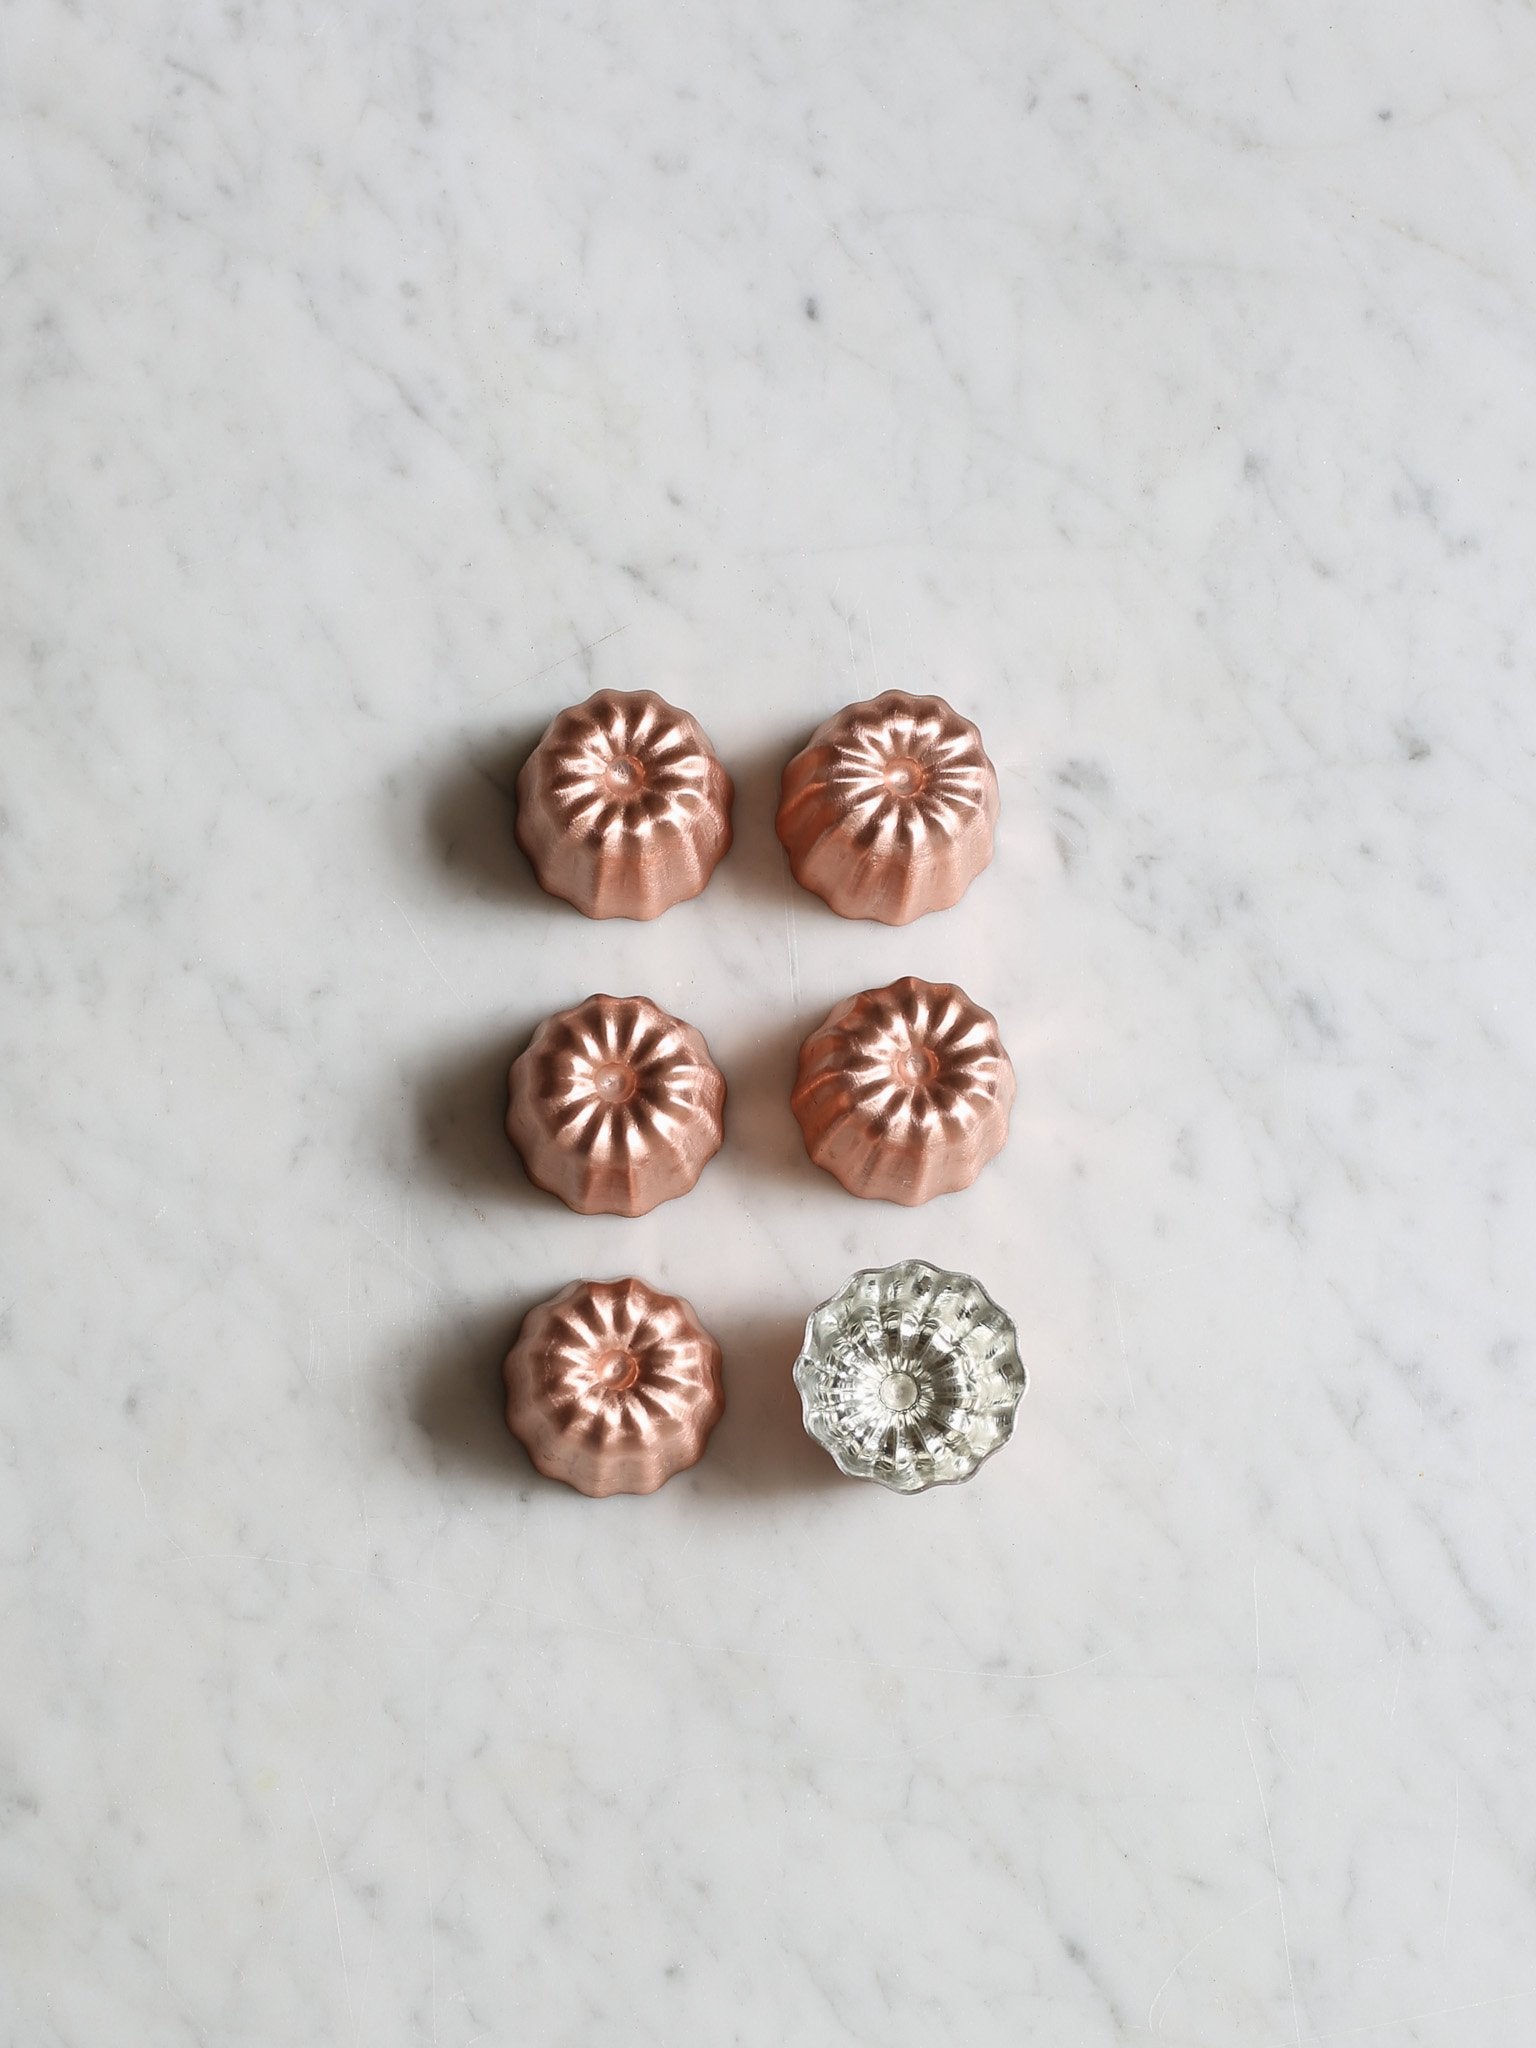 Petite Copper Cannelé Molds